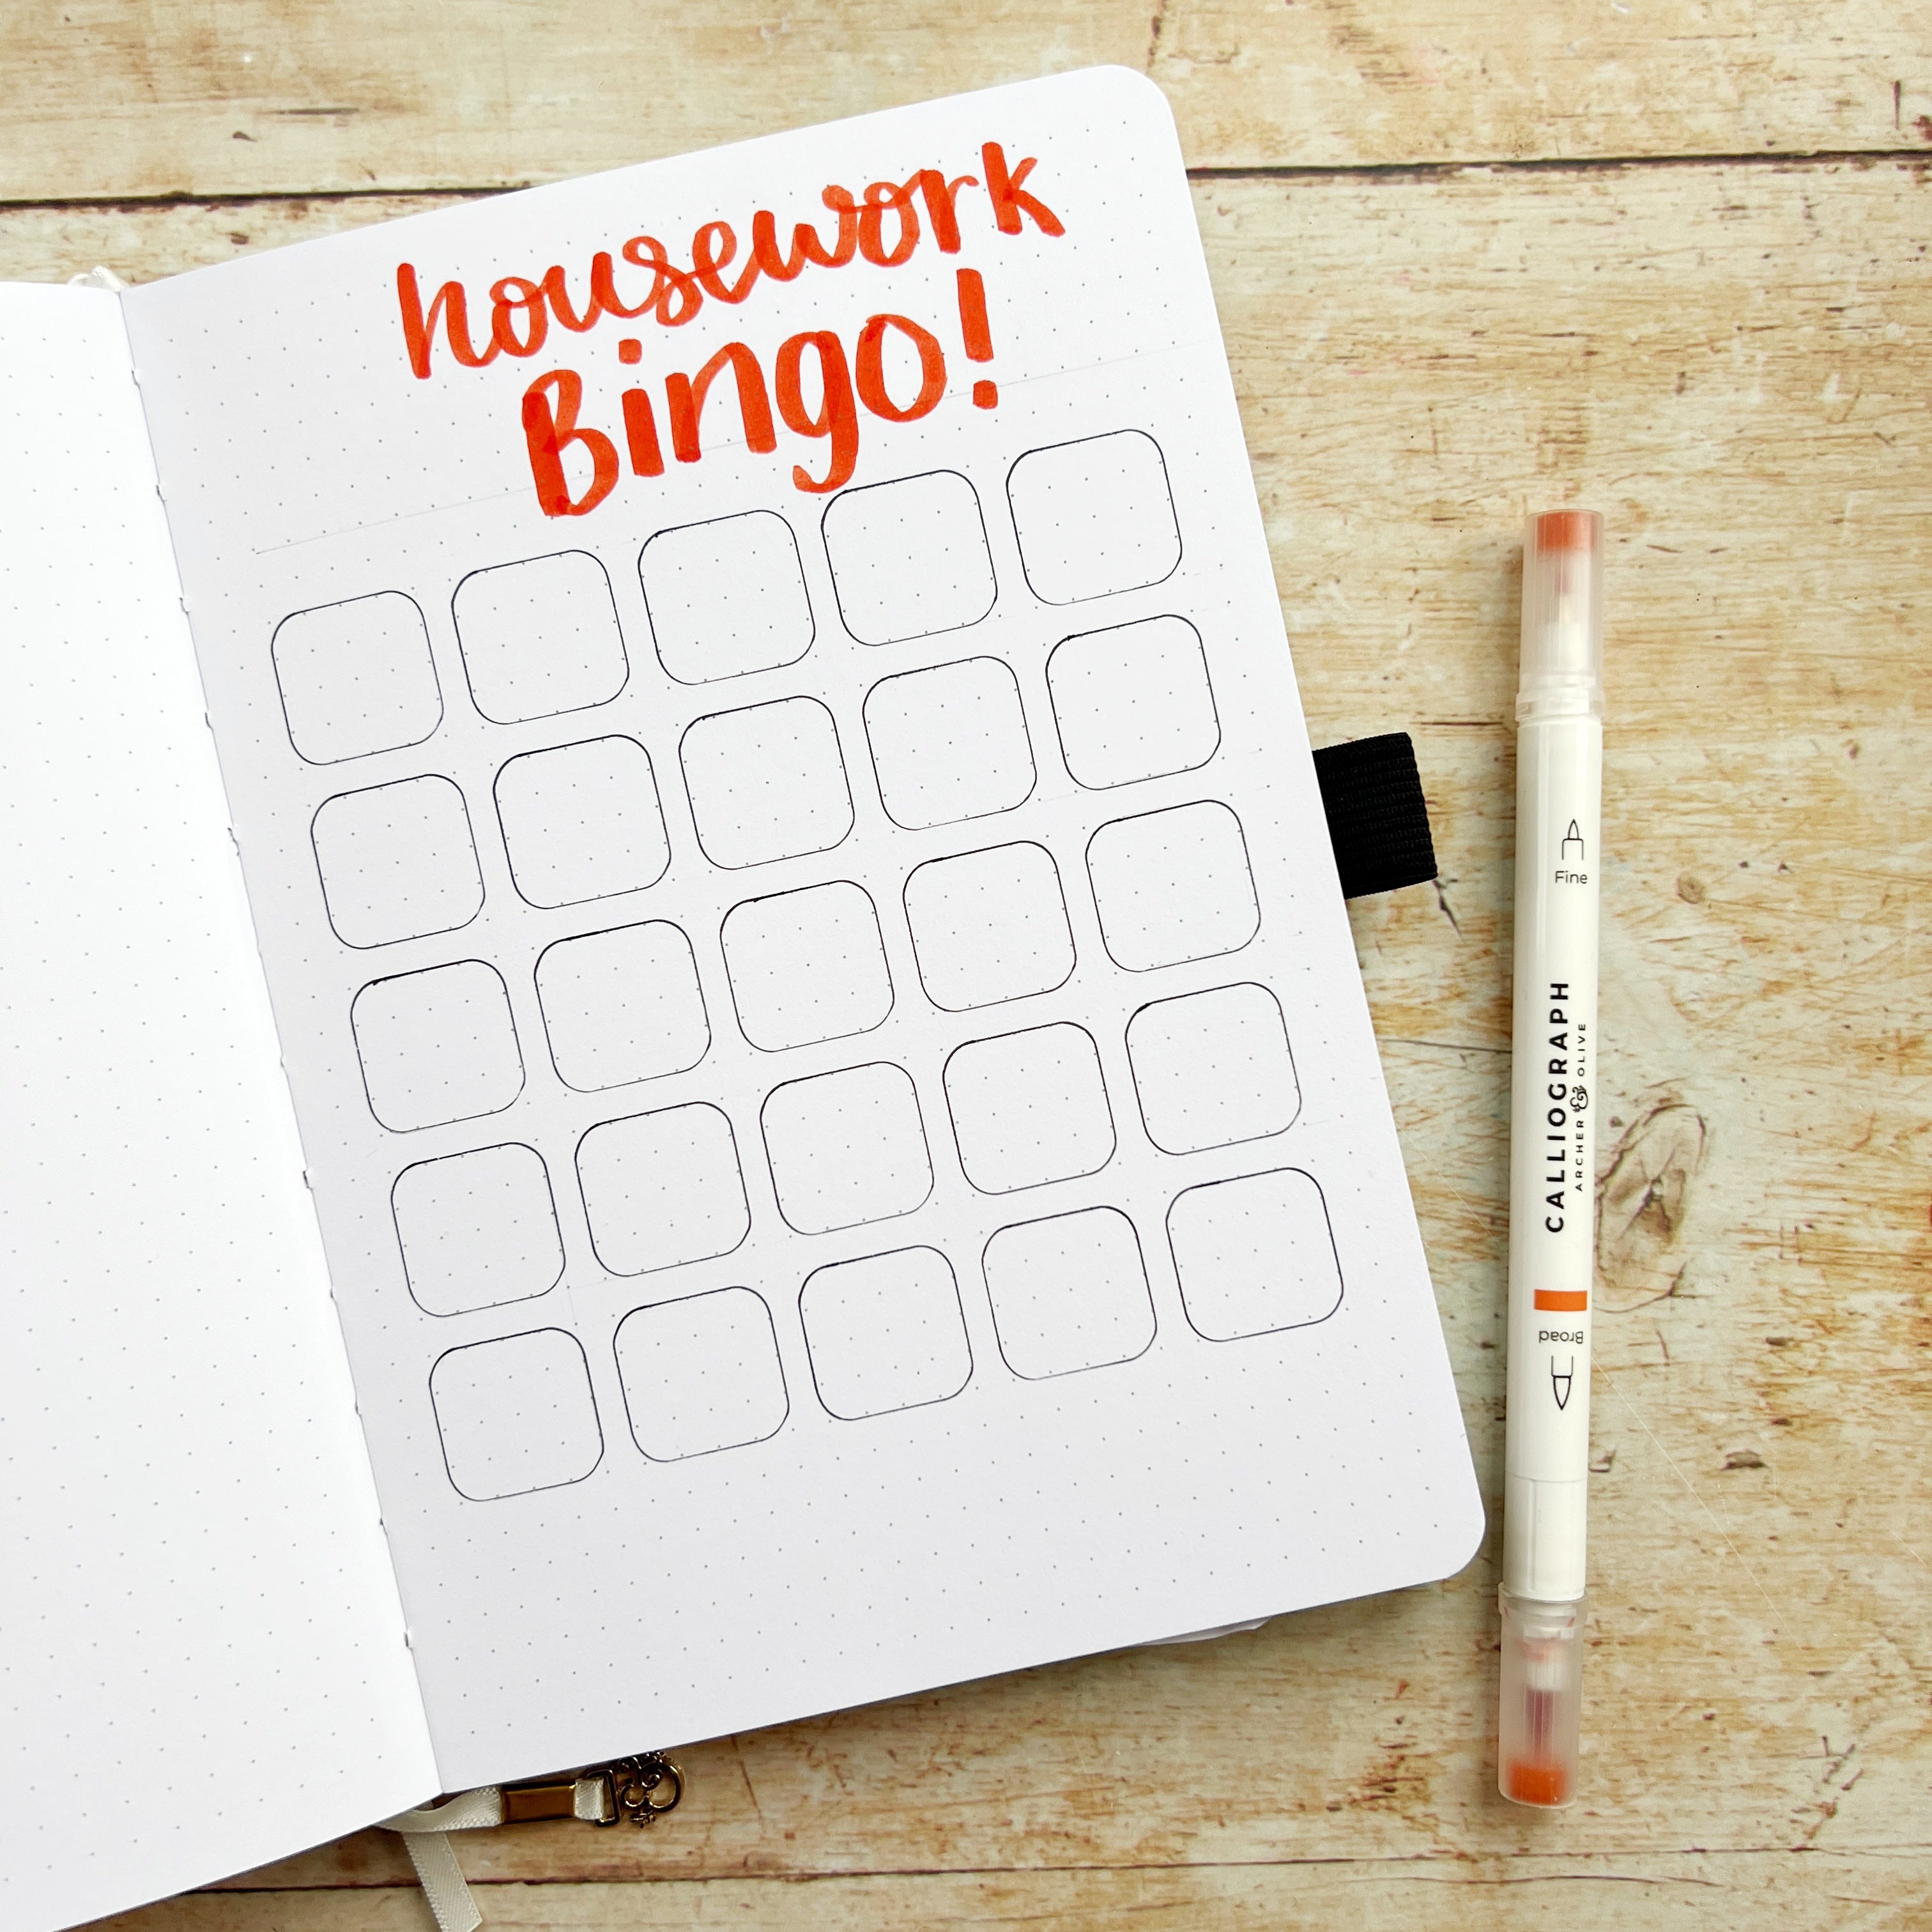 housework bingo header in open journal with 25 squares